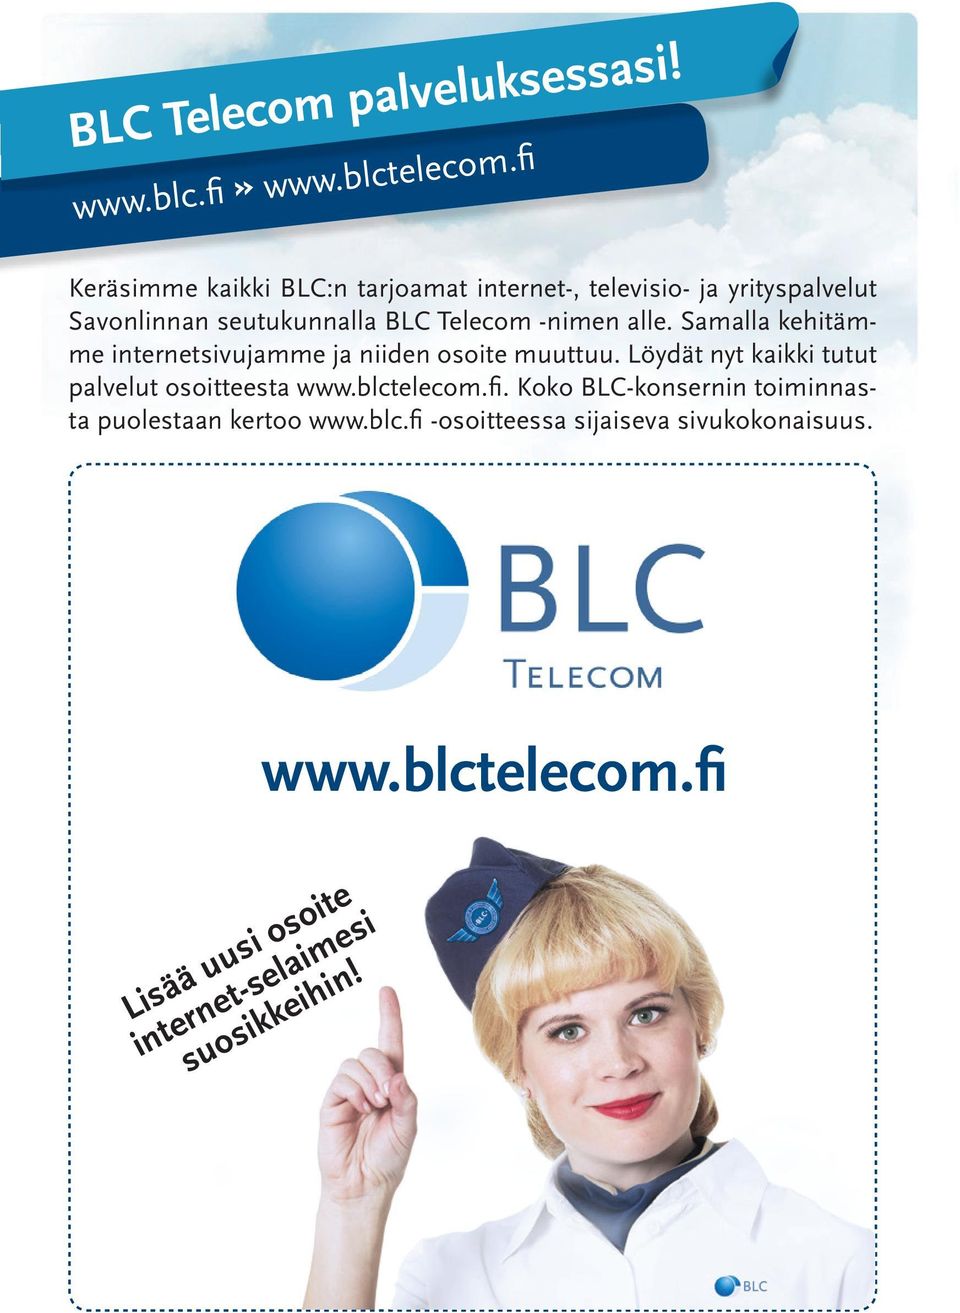 Samalla kehitämme internetsivujamme ja niiden osoite muuttuu. Löydät nyt kaikki tutut palvelut osoitteesta www.blctelecom.fi.